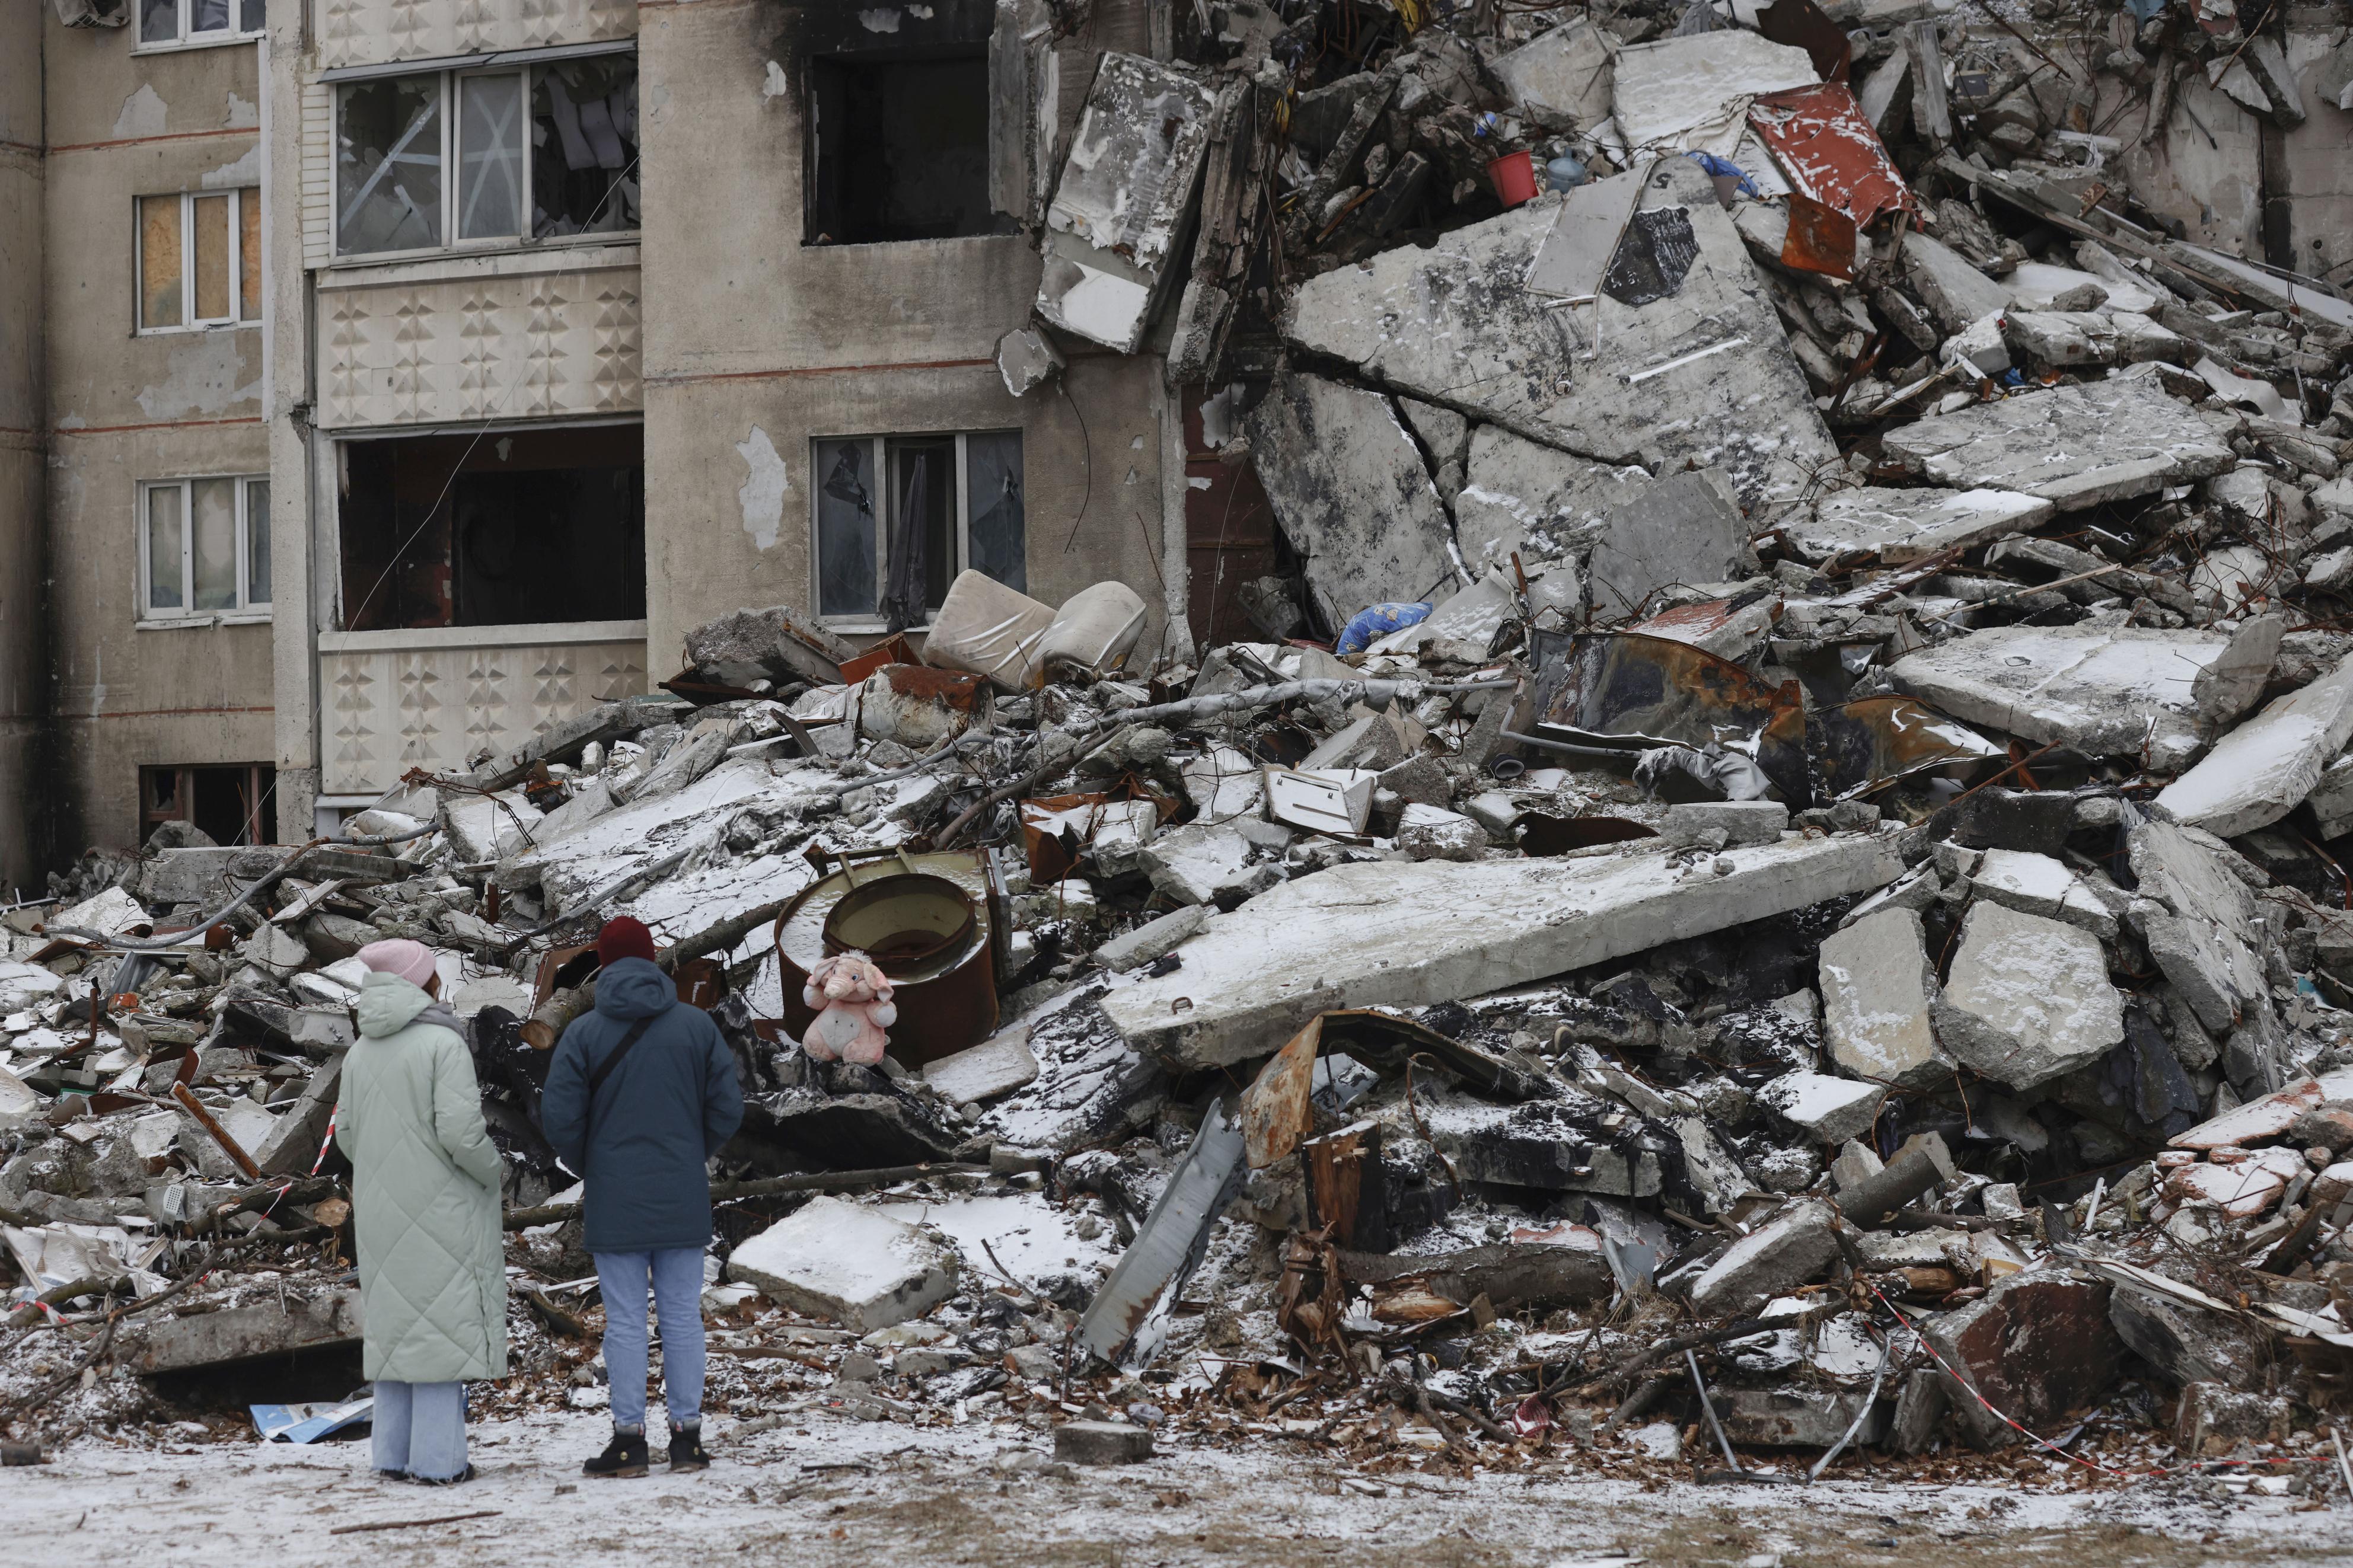 フォト】裁き待つミサイルの残骸 民間人攻撃の責任追及 ウクライナ 